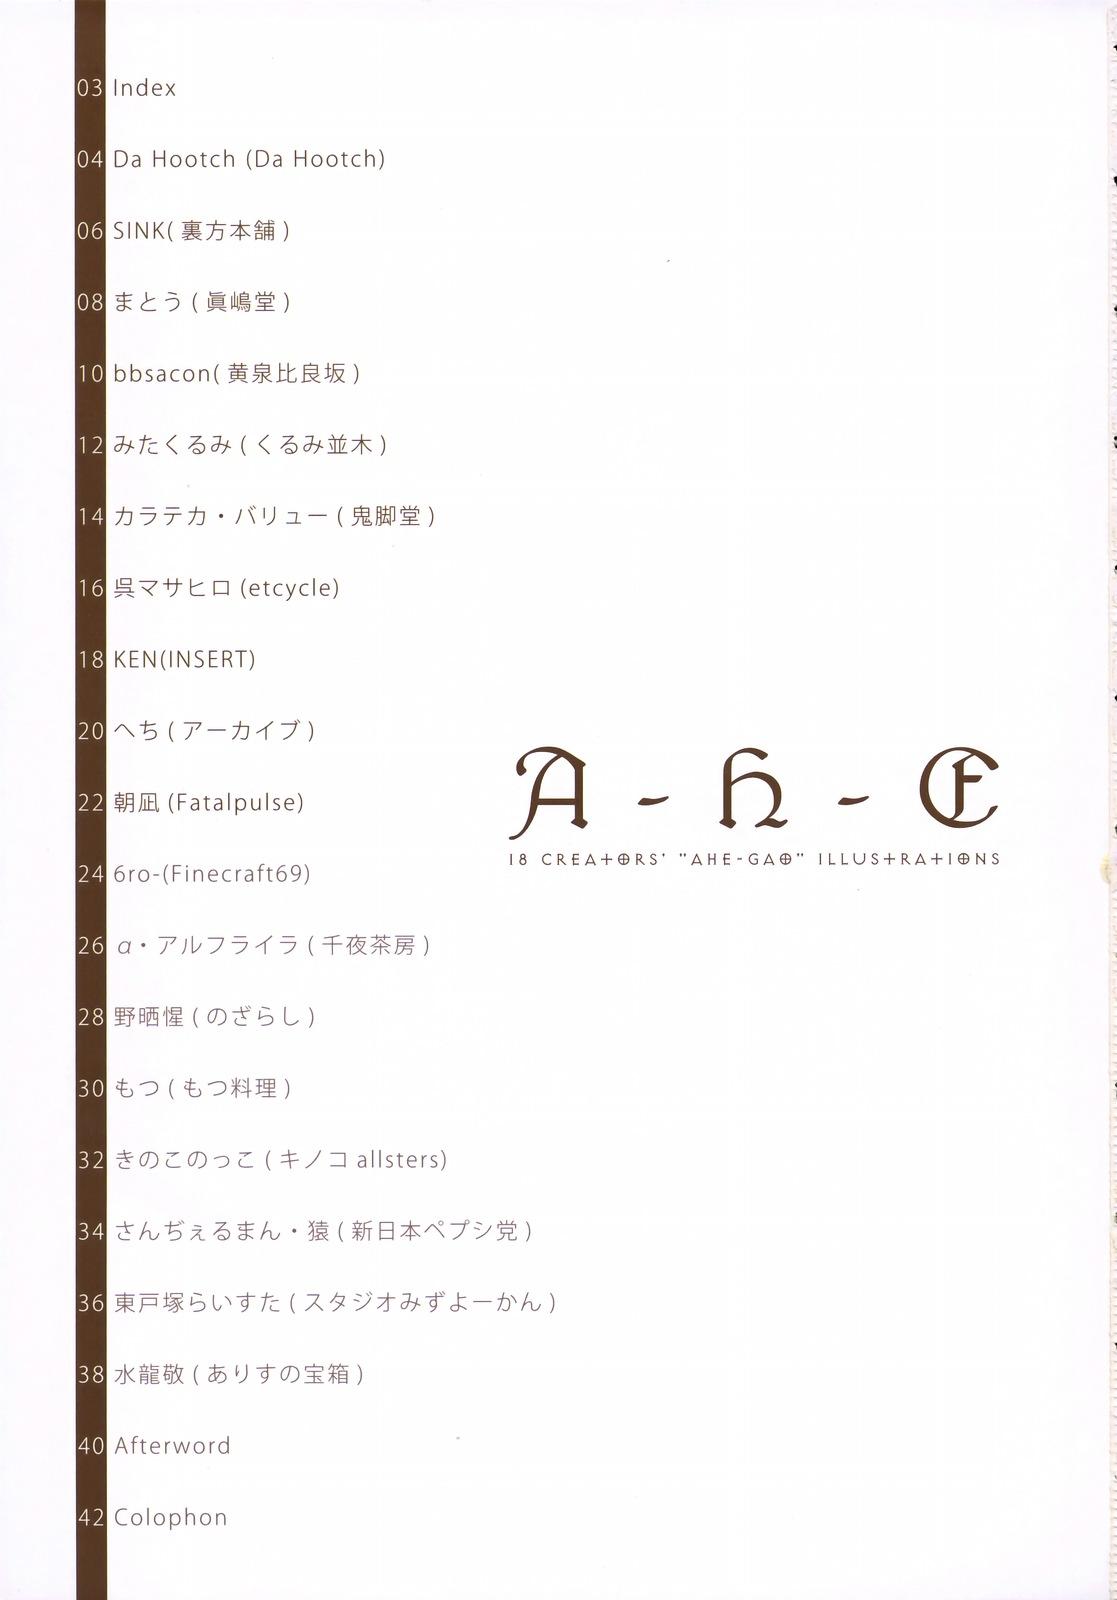 Home (C75) [A-H-E Sesaku Iinkai, Alice no Takarabako (Various)] A-H-E 18 creators' "ahe-gao" illustrations Bigcocks - Page 2